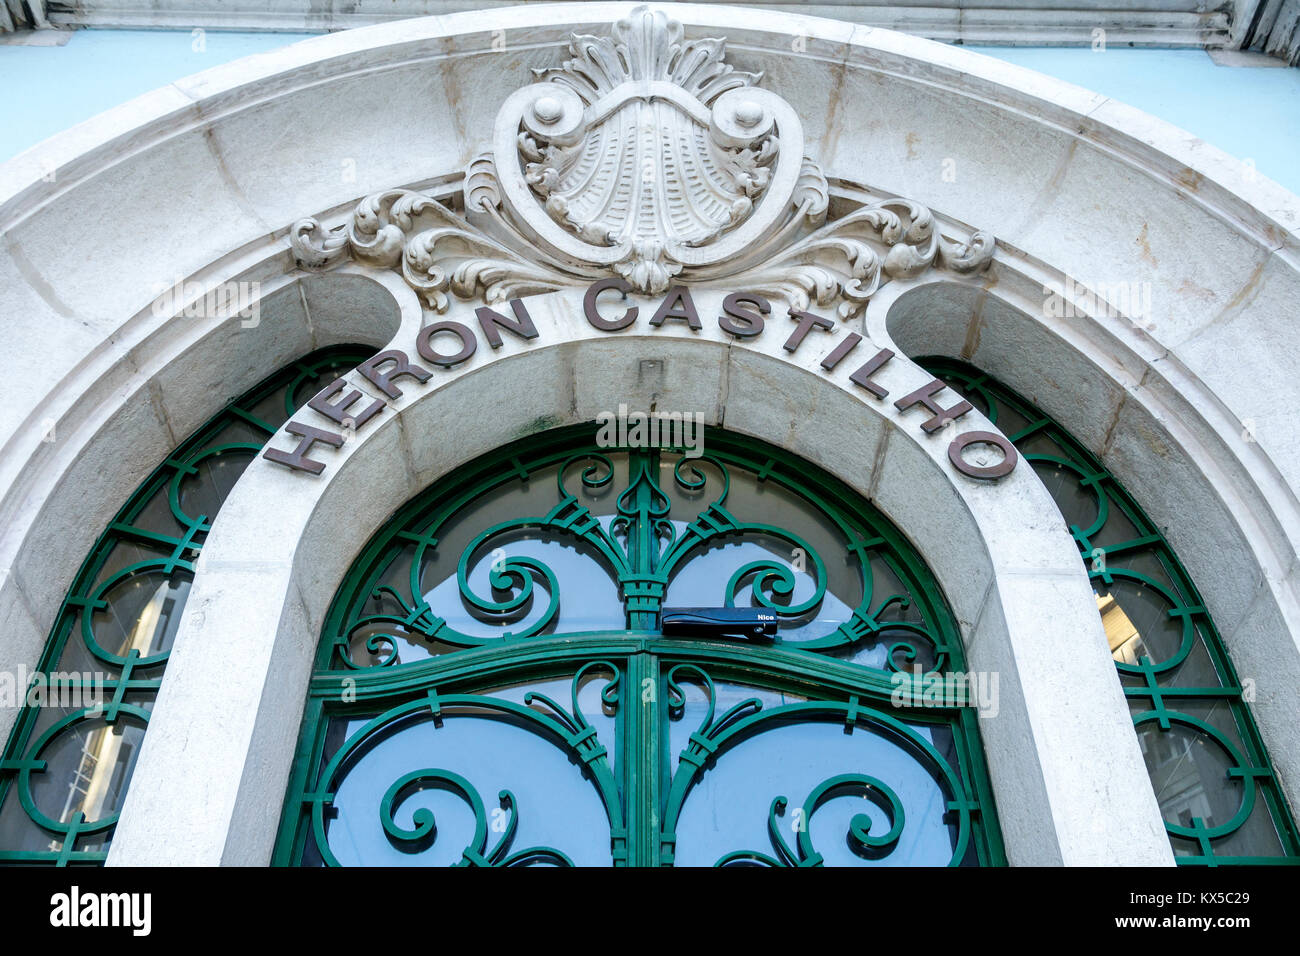 Lisbon Portugal,Marques de Pombal,Heron Castilho building,exterior outside,architecture,Art Nouveau,1921,Manuel Joaquim Norte Junior,door,Hispanic,imm Stock Photo